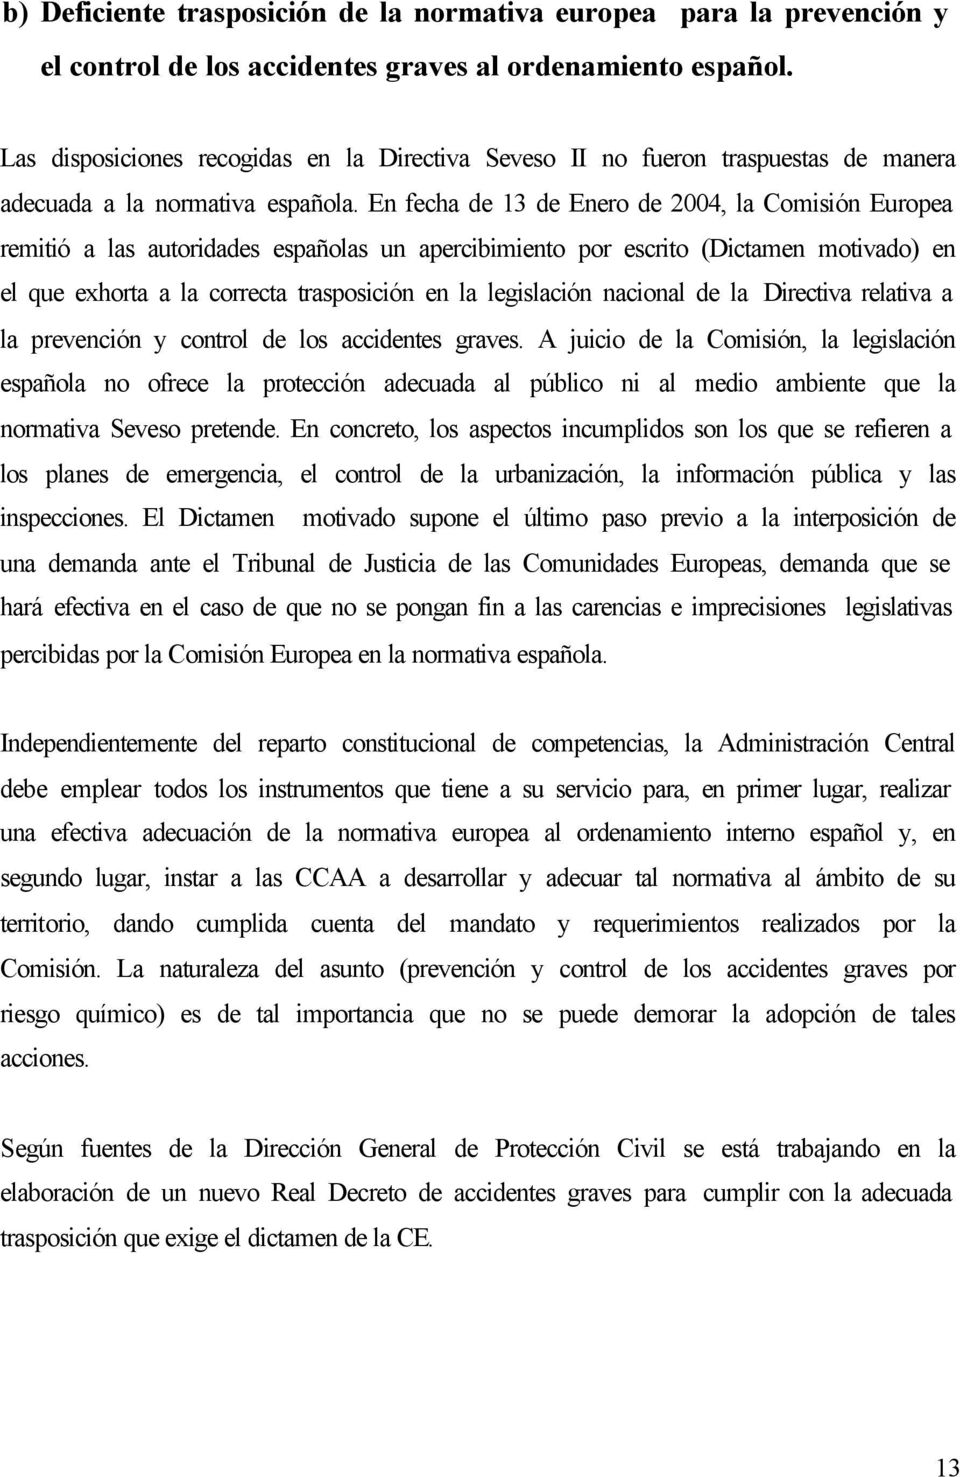 En fecha de 13 de Enero de 2004, la Comisión Europea remitió a las autoridades españolas un apercibimiento por escrito (Dictamen motivado) en el que exhorta a la correcta trasposición en la